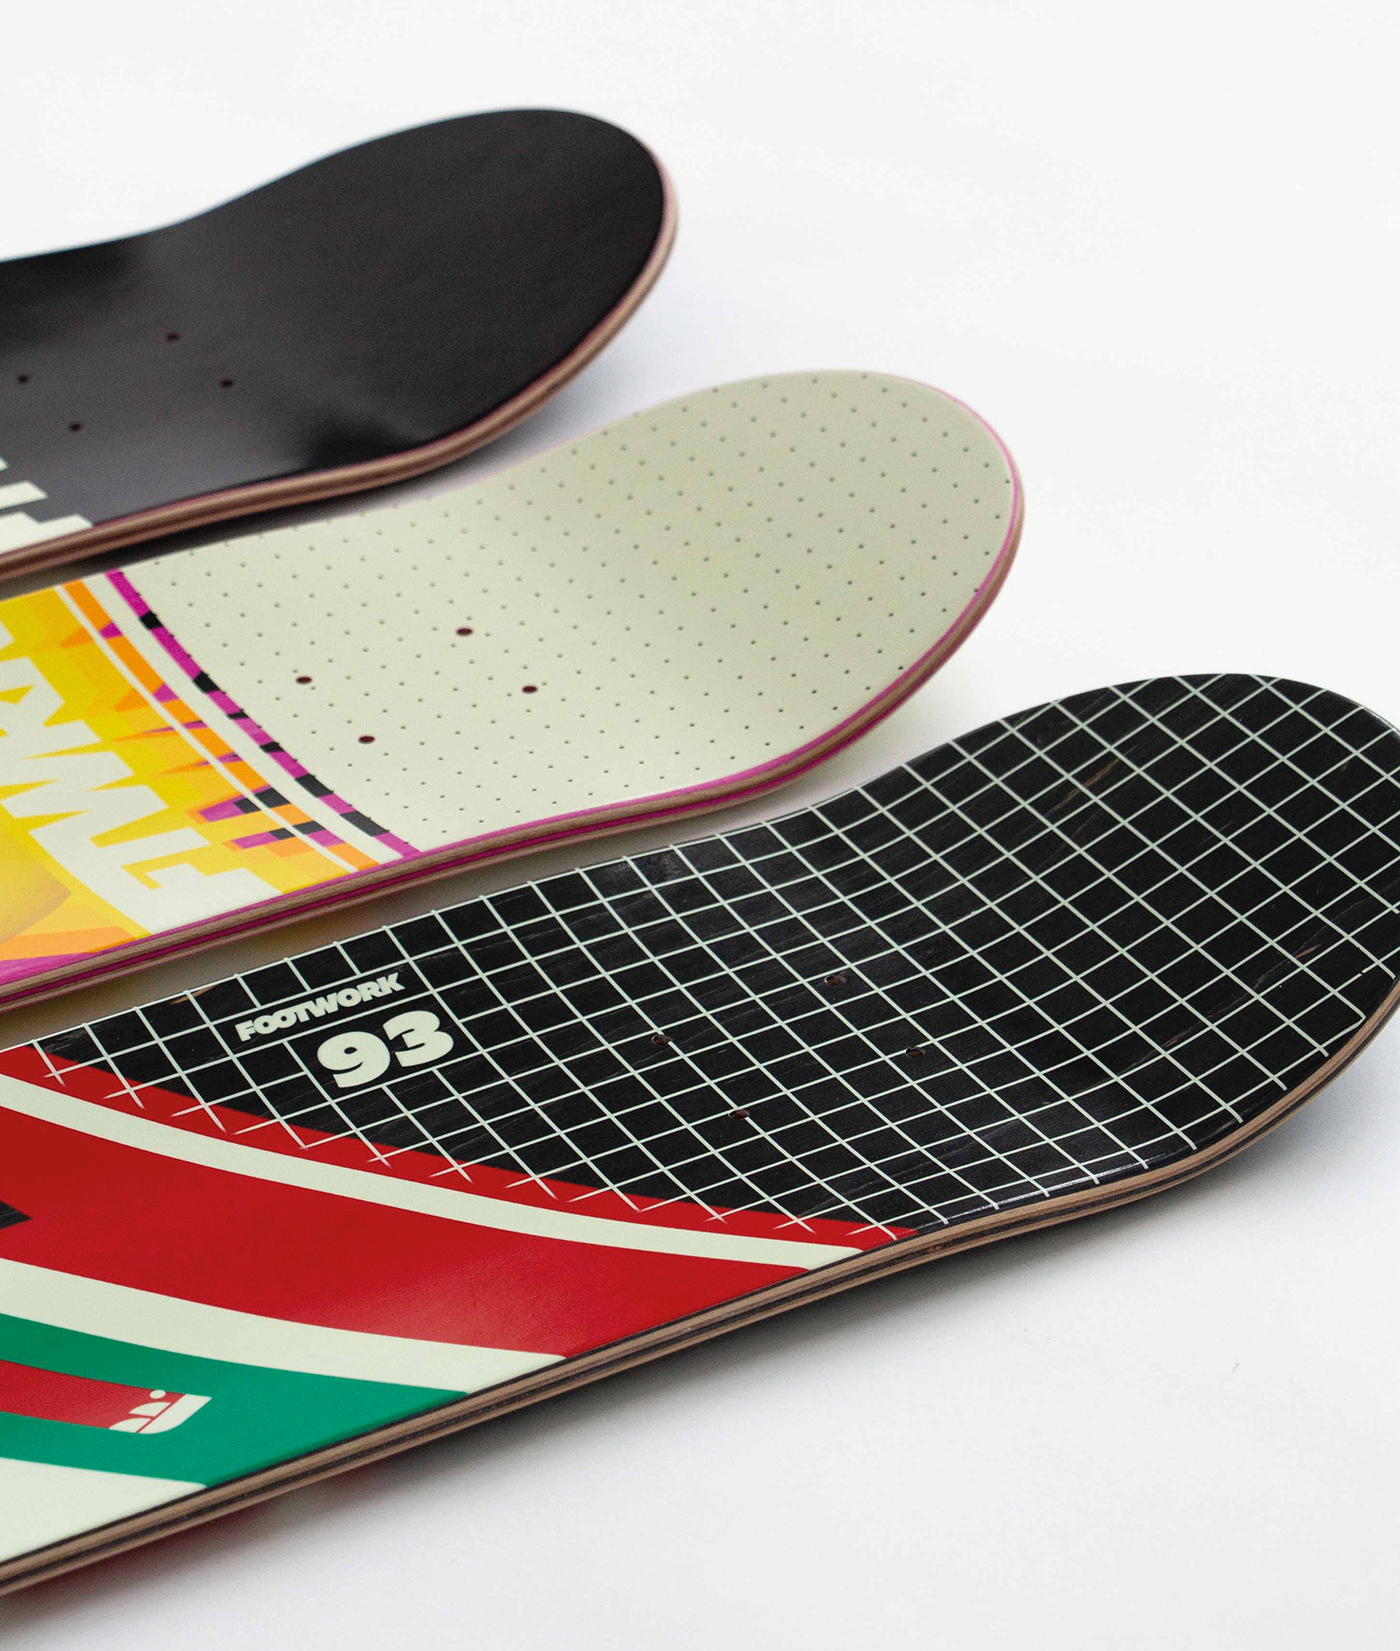 skate skateboarding Skate design design a skateboard SKATEBOARD DESIGN Skate graphics